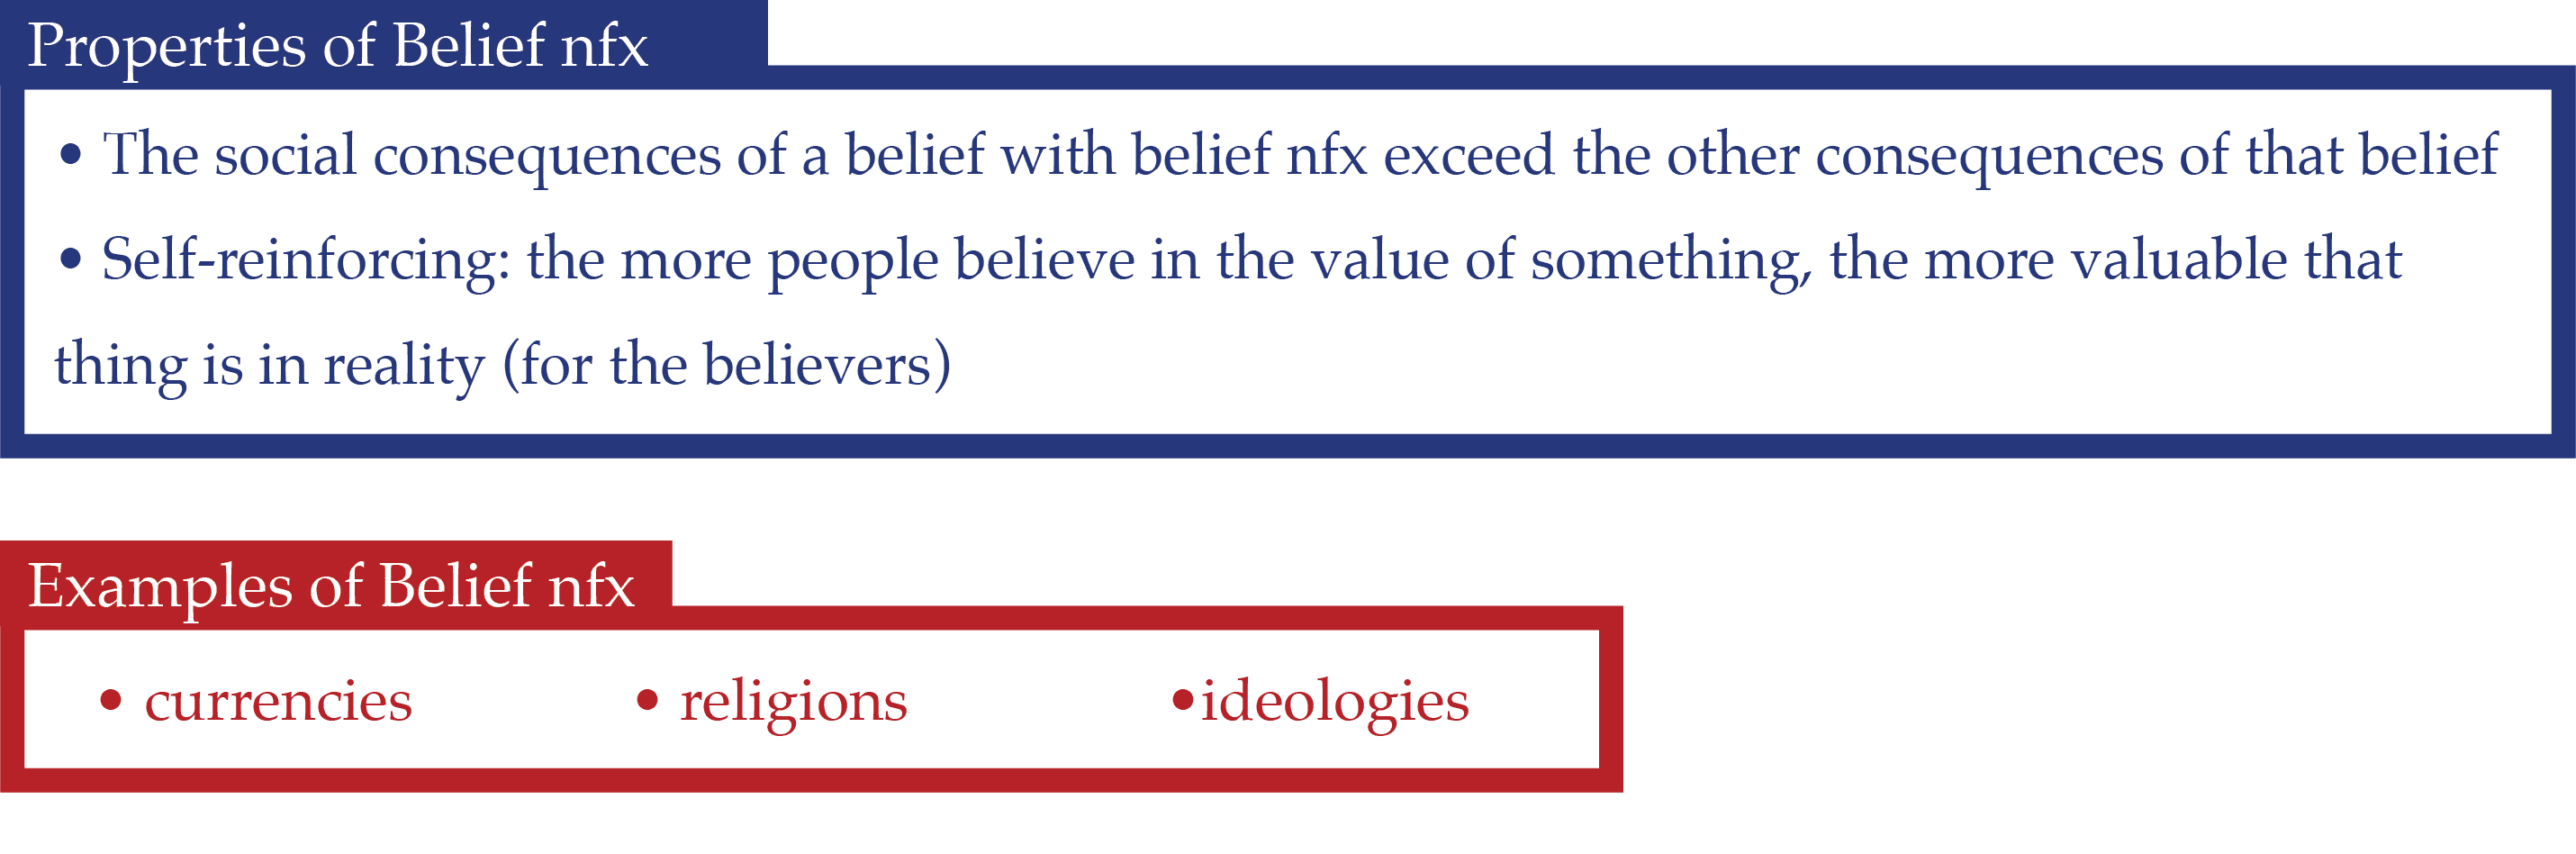 Properties of Belief